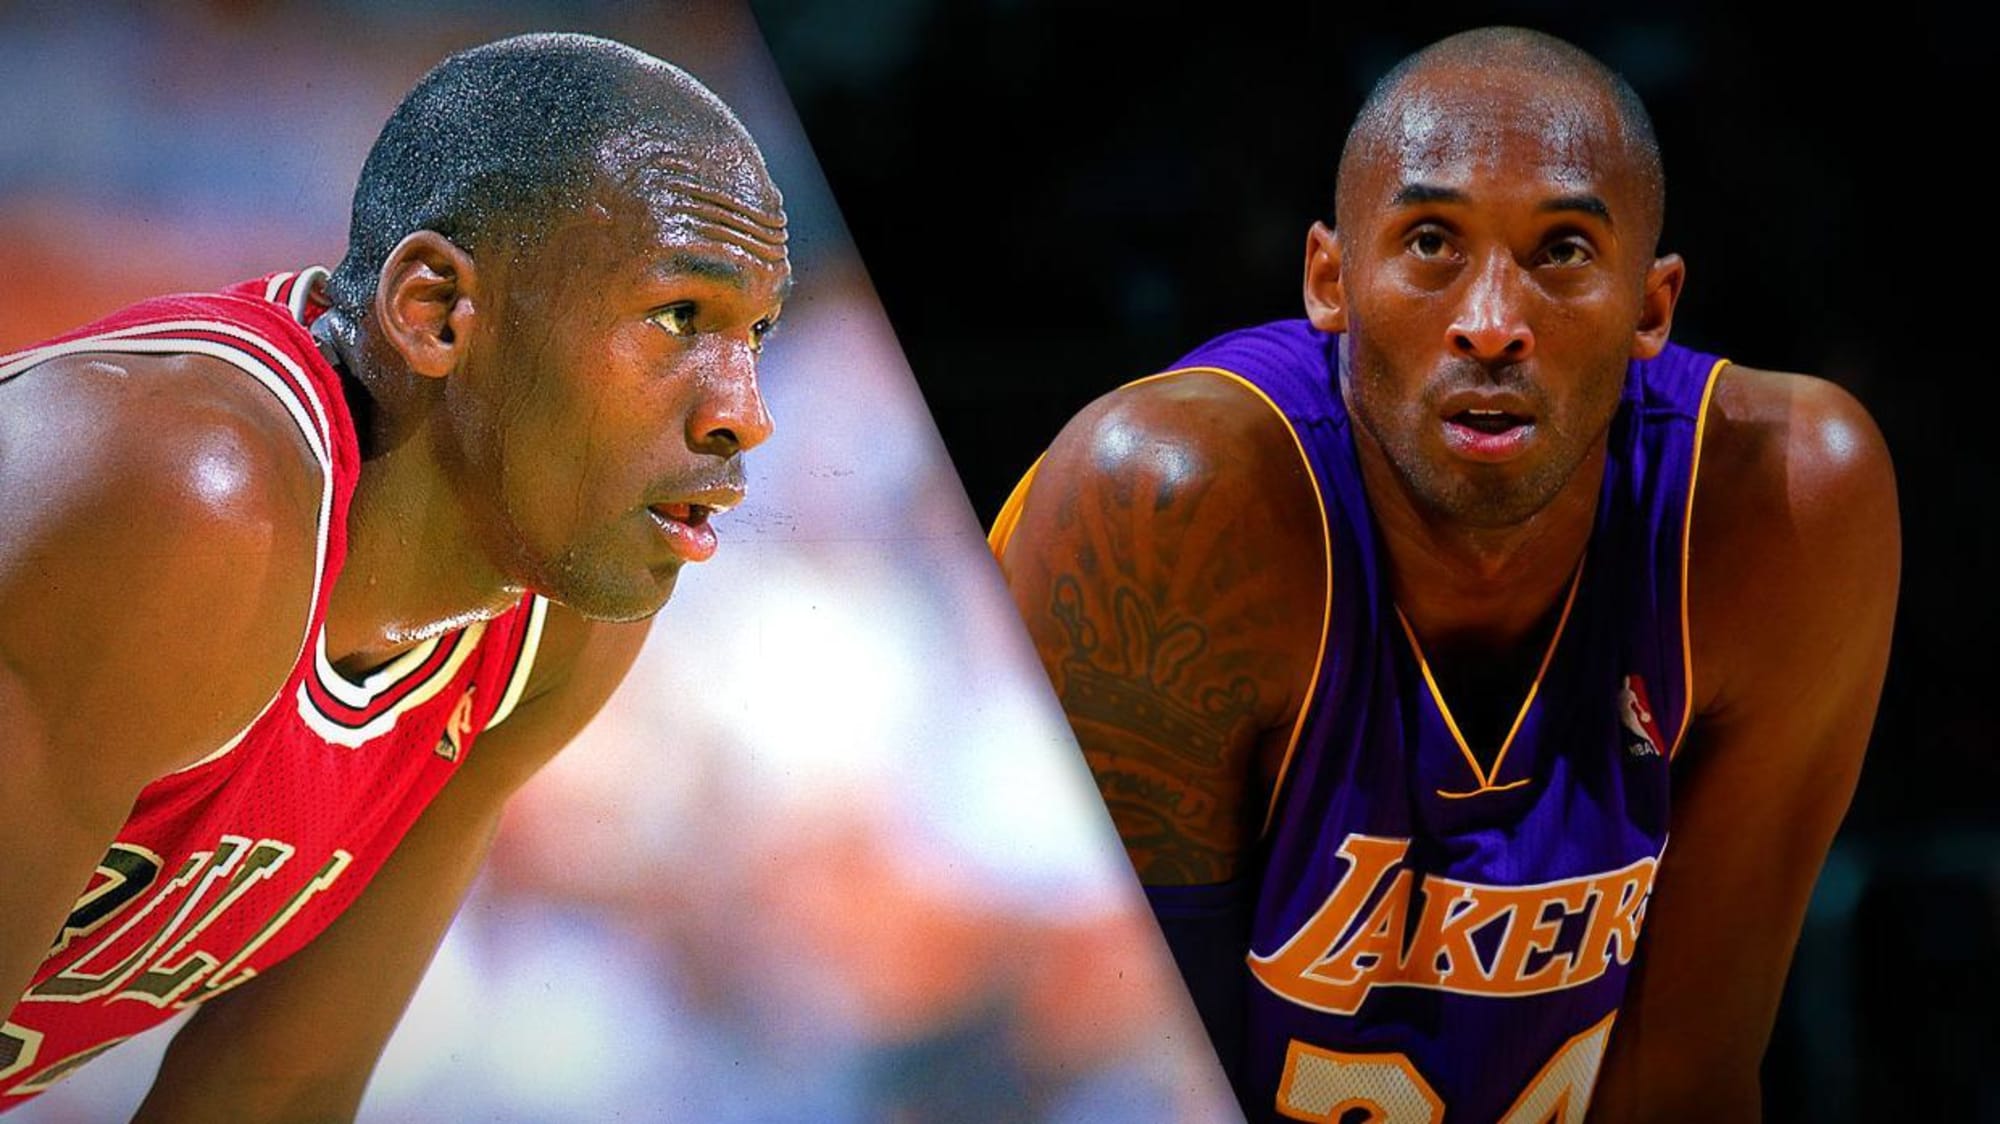 Michael Jordan and Kobe Bryant are playing in a 2003 NBA All-Star Game in  Atlanta, GA